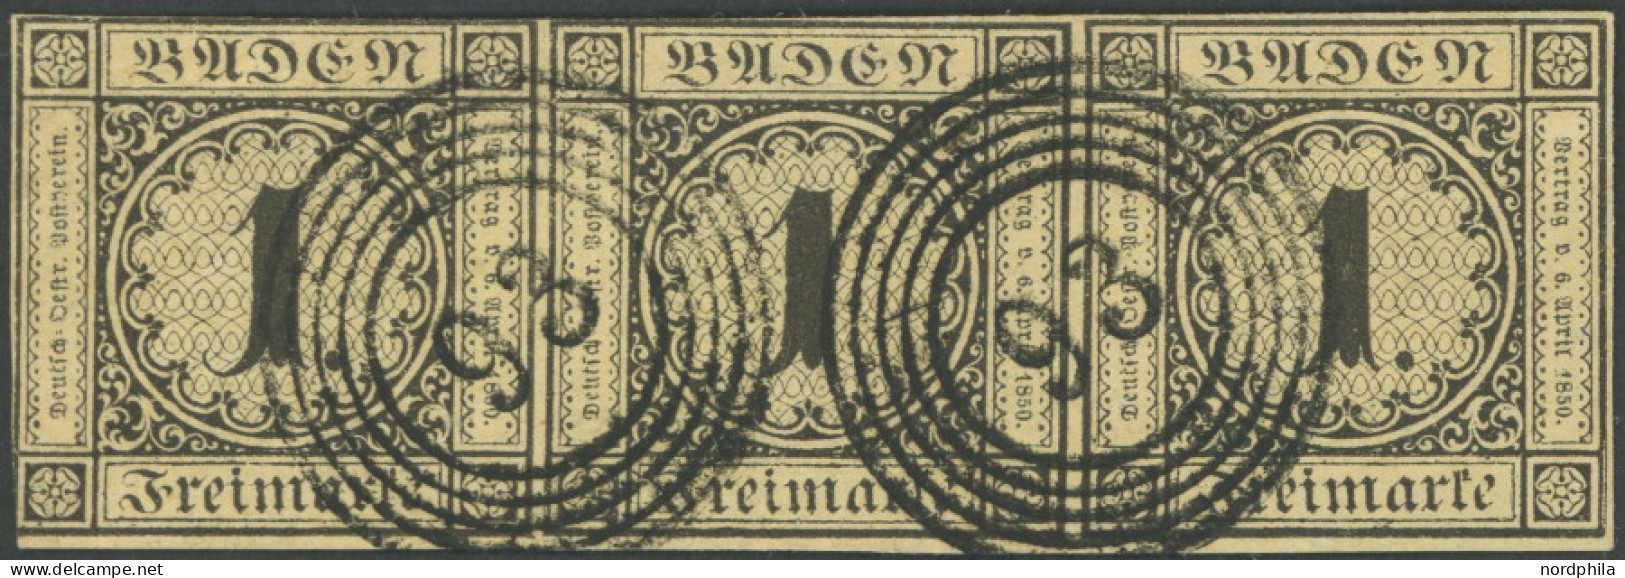 BADEN 1a O, 1851, 1 Kr. Schwarz Auf Sämisch Im Waagerechten Dreierstreifen Mit Nummernstempel 93 (MOSBACH), Fotoattest P - Afgestempeld